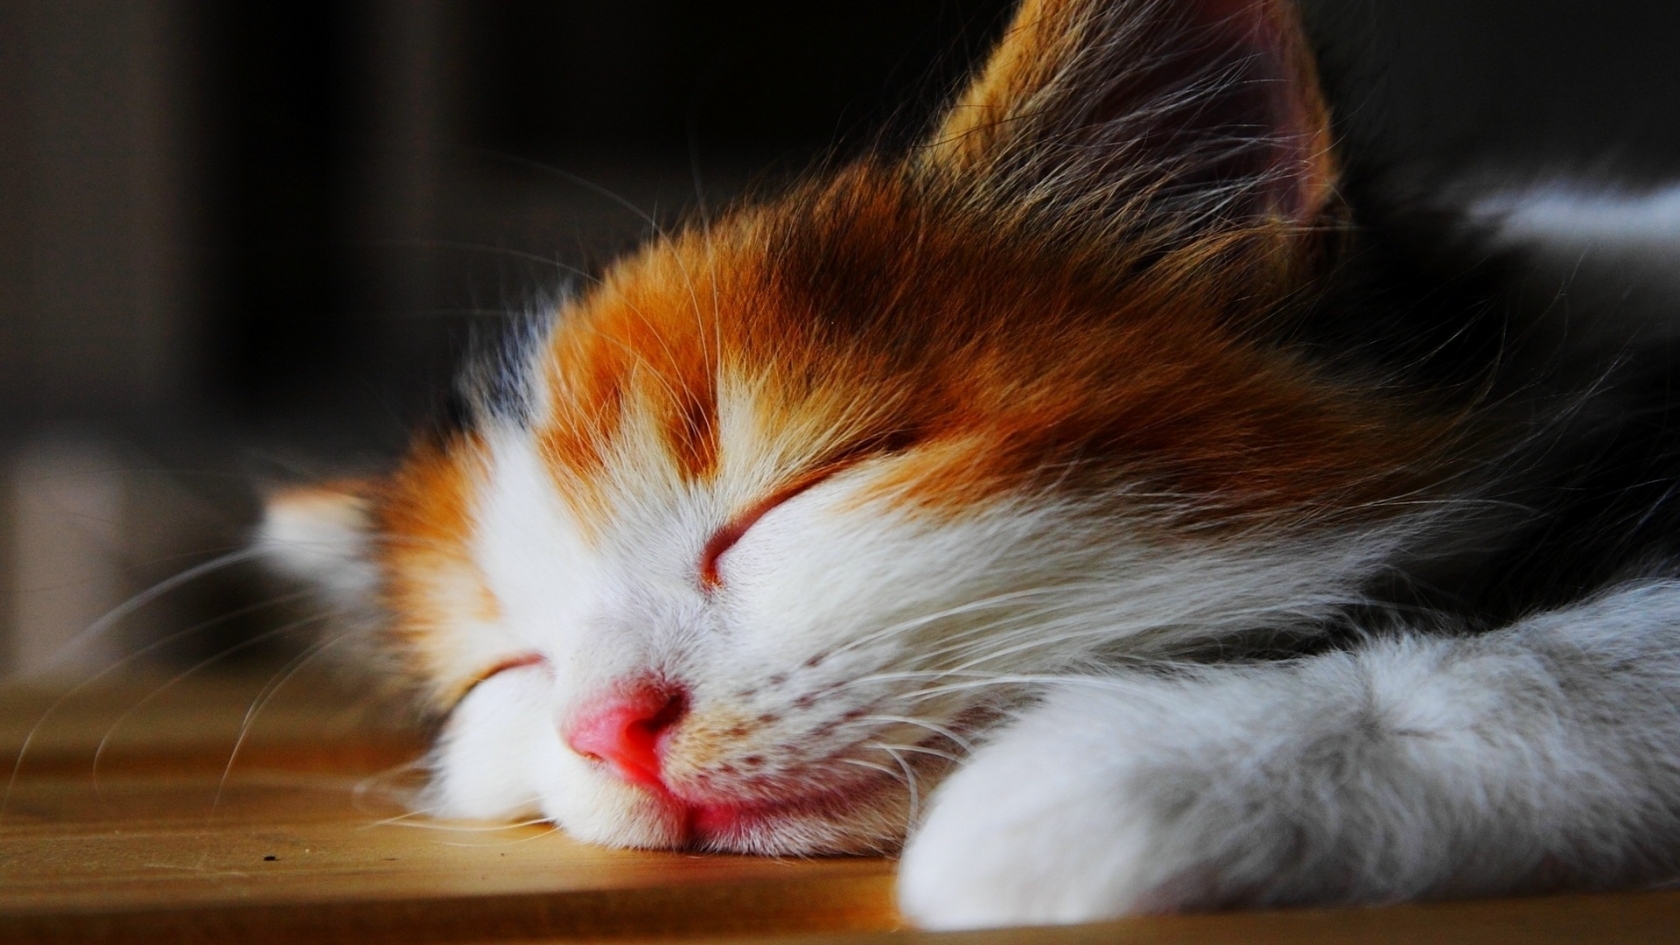 Amazingly Cute Sleepy Kitten  for 1680 x 945 HDTV resolution